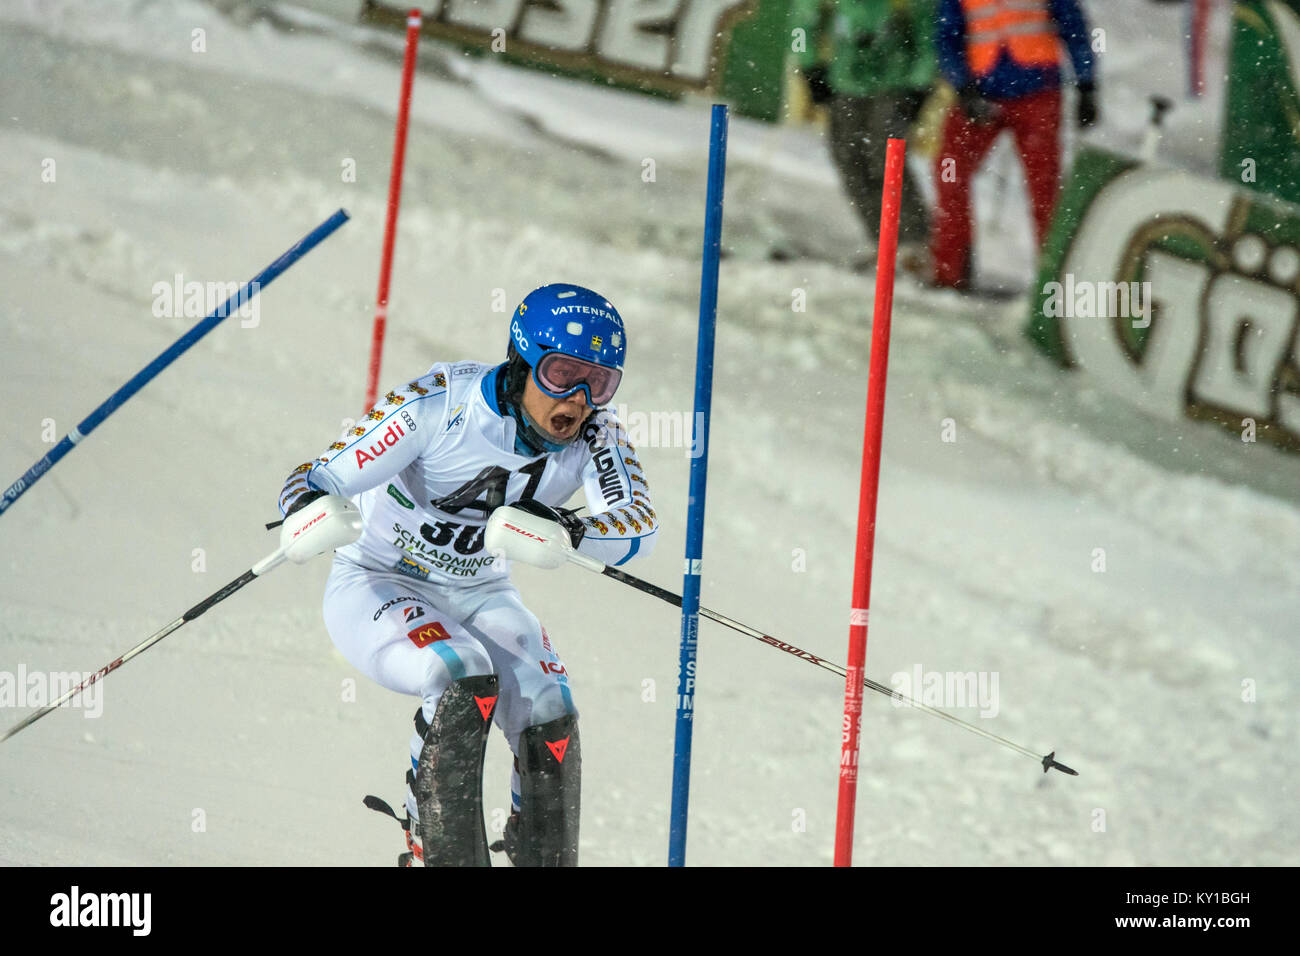 Calle Lindh (30) carreras desde Suecia el curso Planai durante su primera carrera del hombre de slalom en el AUDI FIS World Cup en Schladming. Crédito de la foto: Christoph Oberschneider. Foto de stock